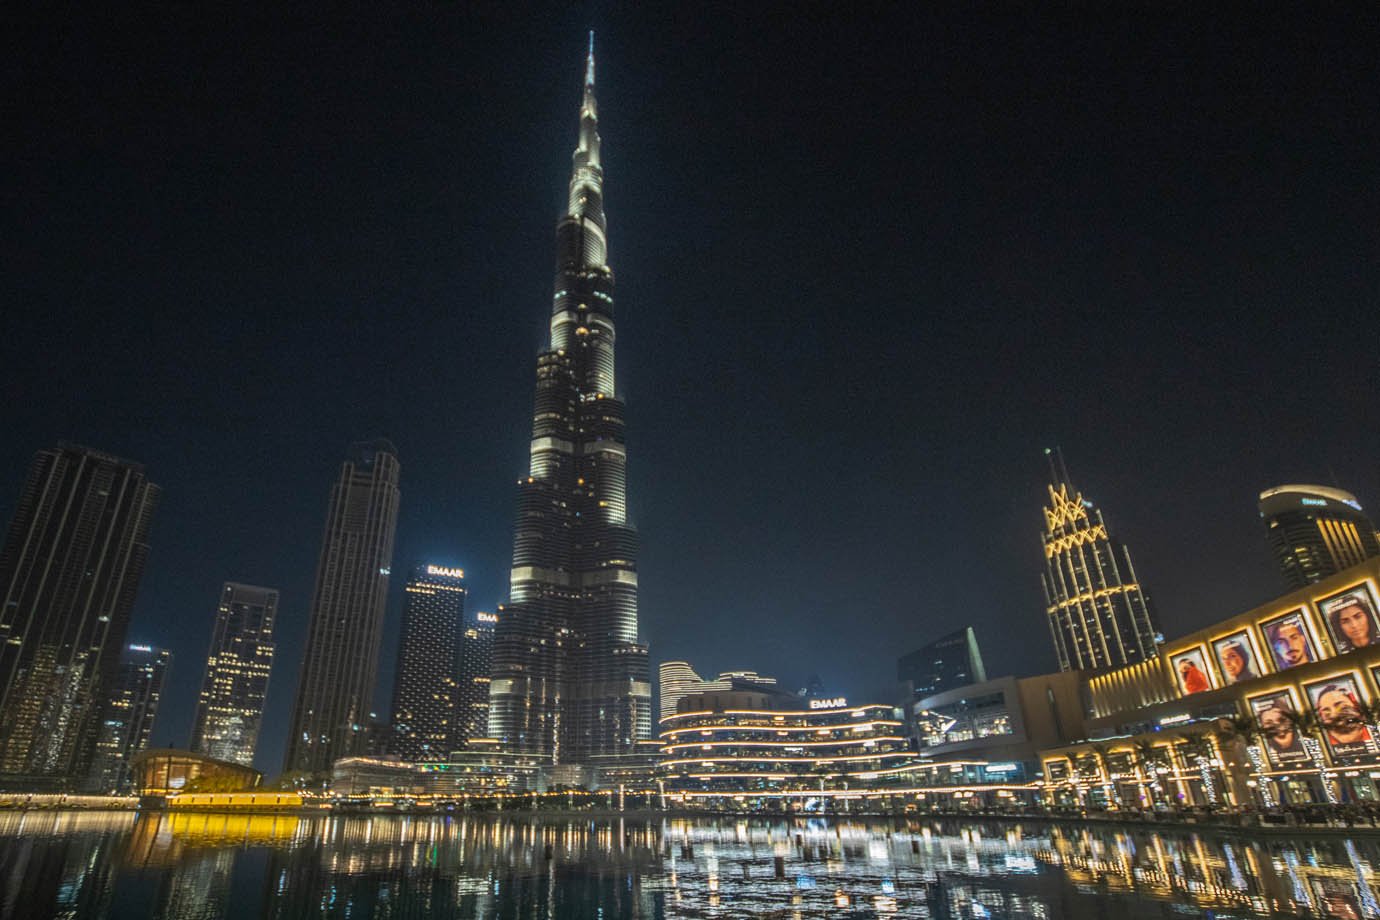 Vista do Burj Khalifa no Dubai Mall
Foto: Leandro Fonseca
Data: dezembro 2023